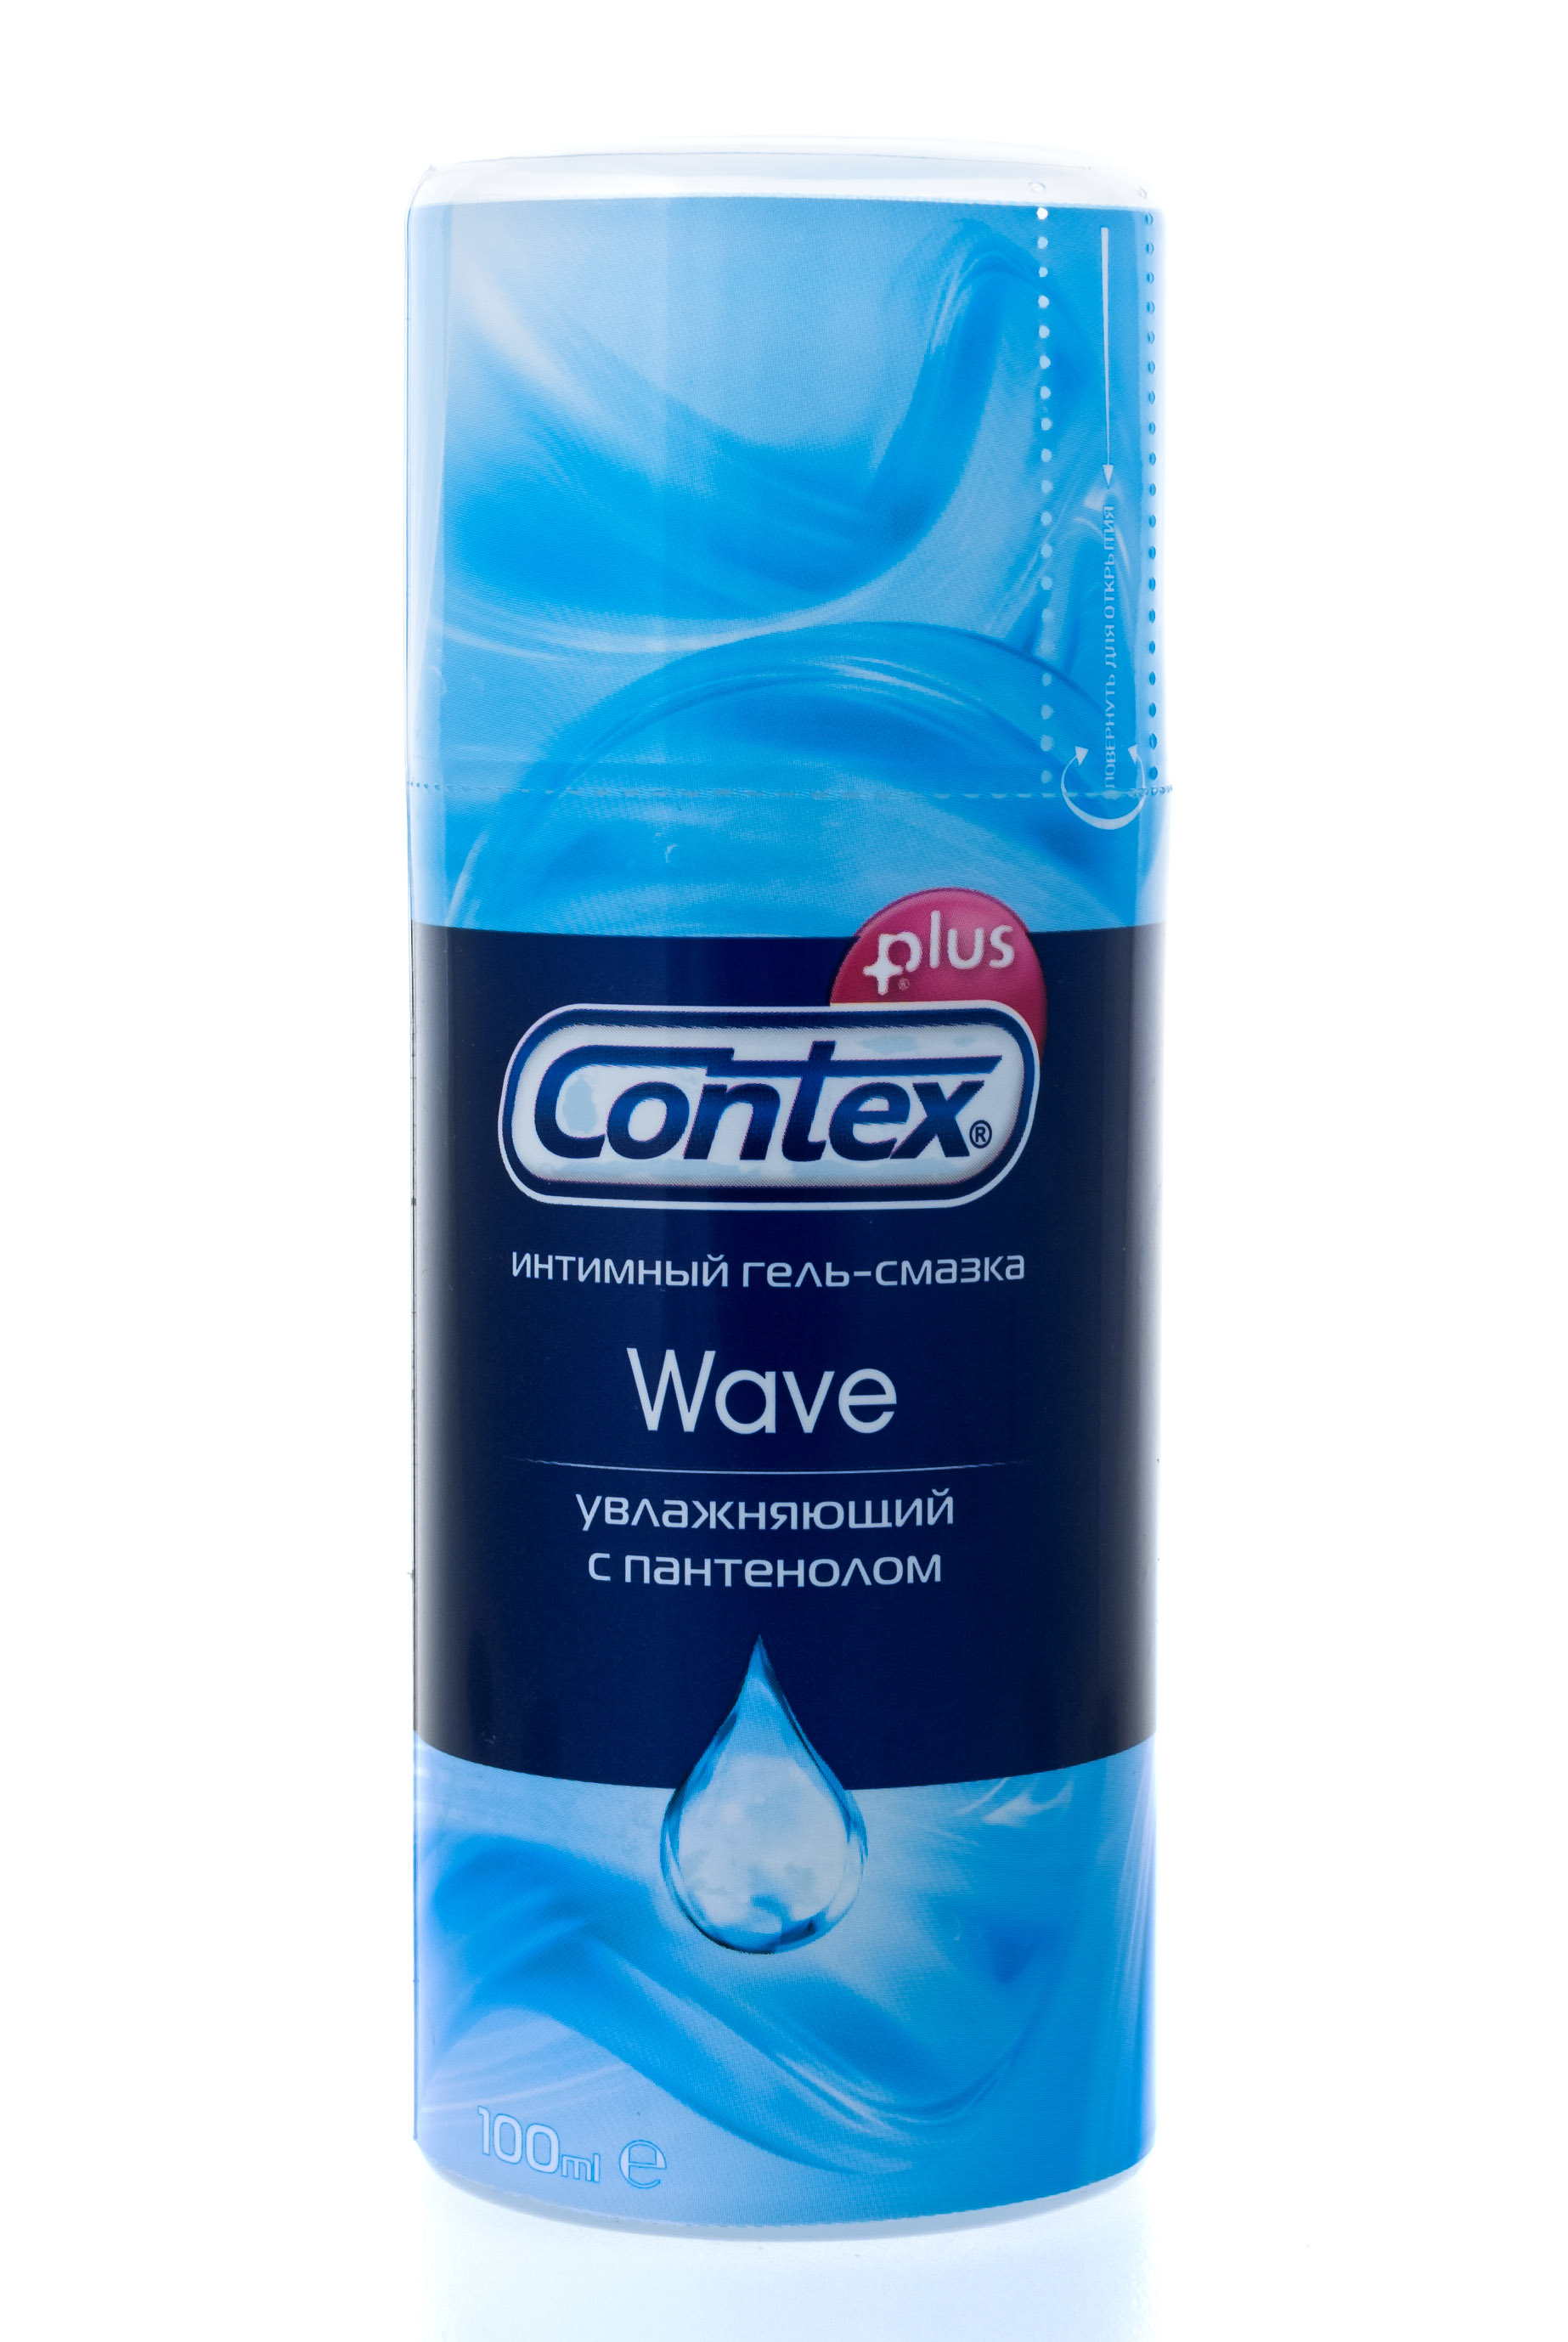 Contex Интимный гель-смазка Wave, 100 мл (Contex, Гель-смазка)